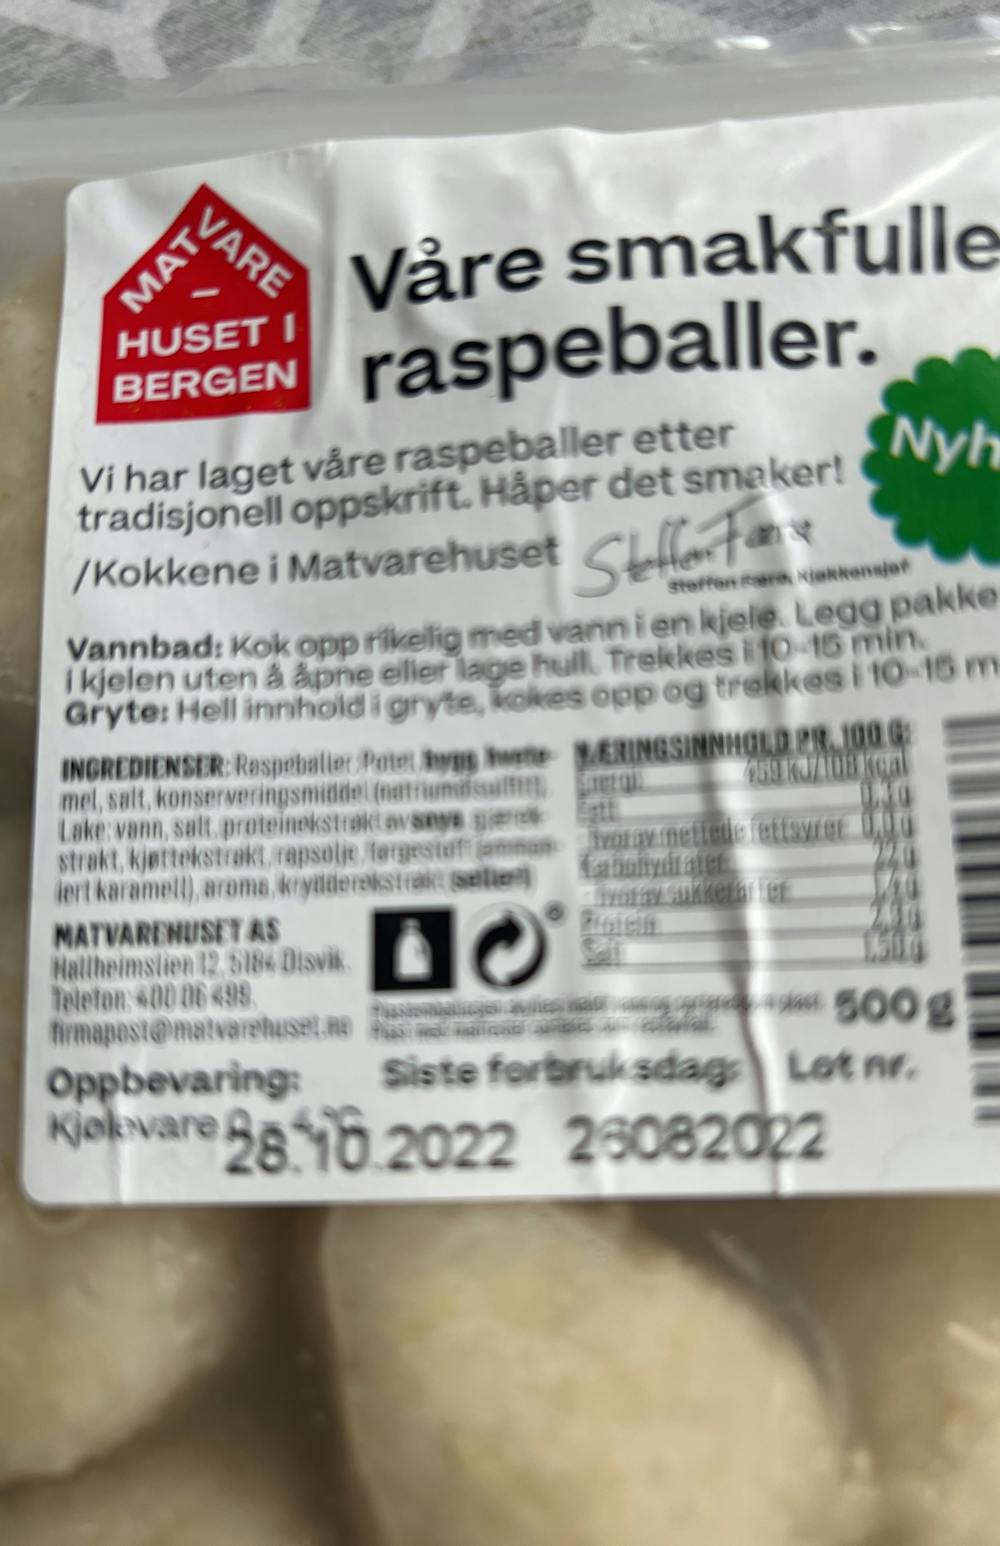 Ingrediensliste - Raspeballer , Matvarehuset i Bergen